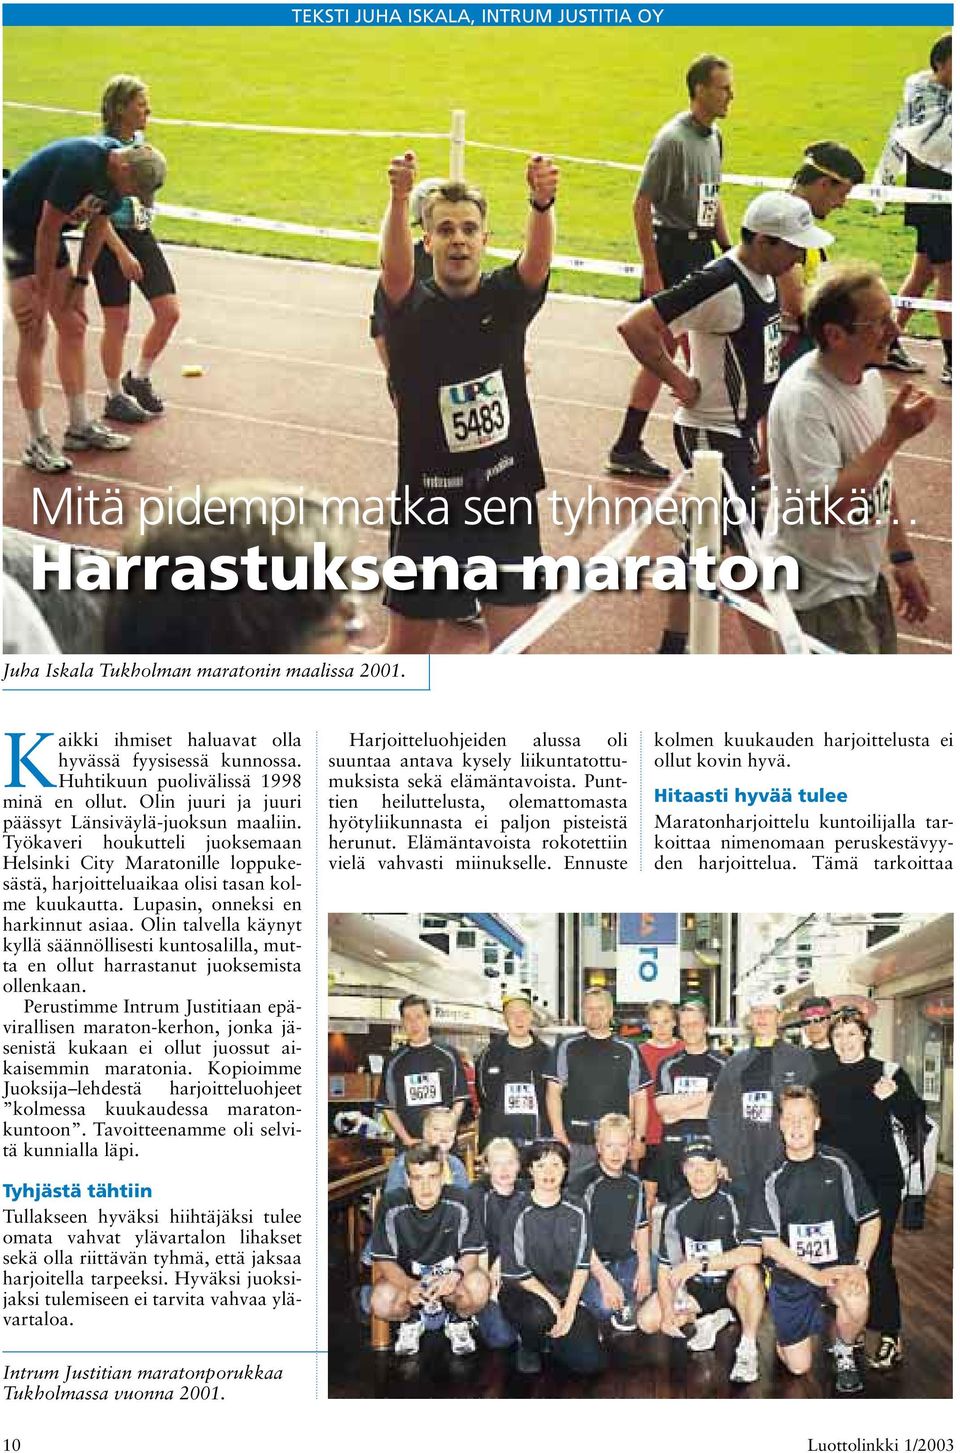 Työkaveri houkutteli juoksemaan Helsinki City Maratonille loppukesästä, harjoitteluaikaa olisi tasan kolme kuukautta. Lupasin, onneksi en harkinnut asiaa.